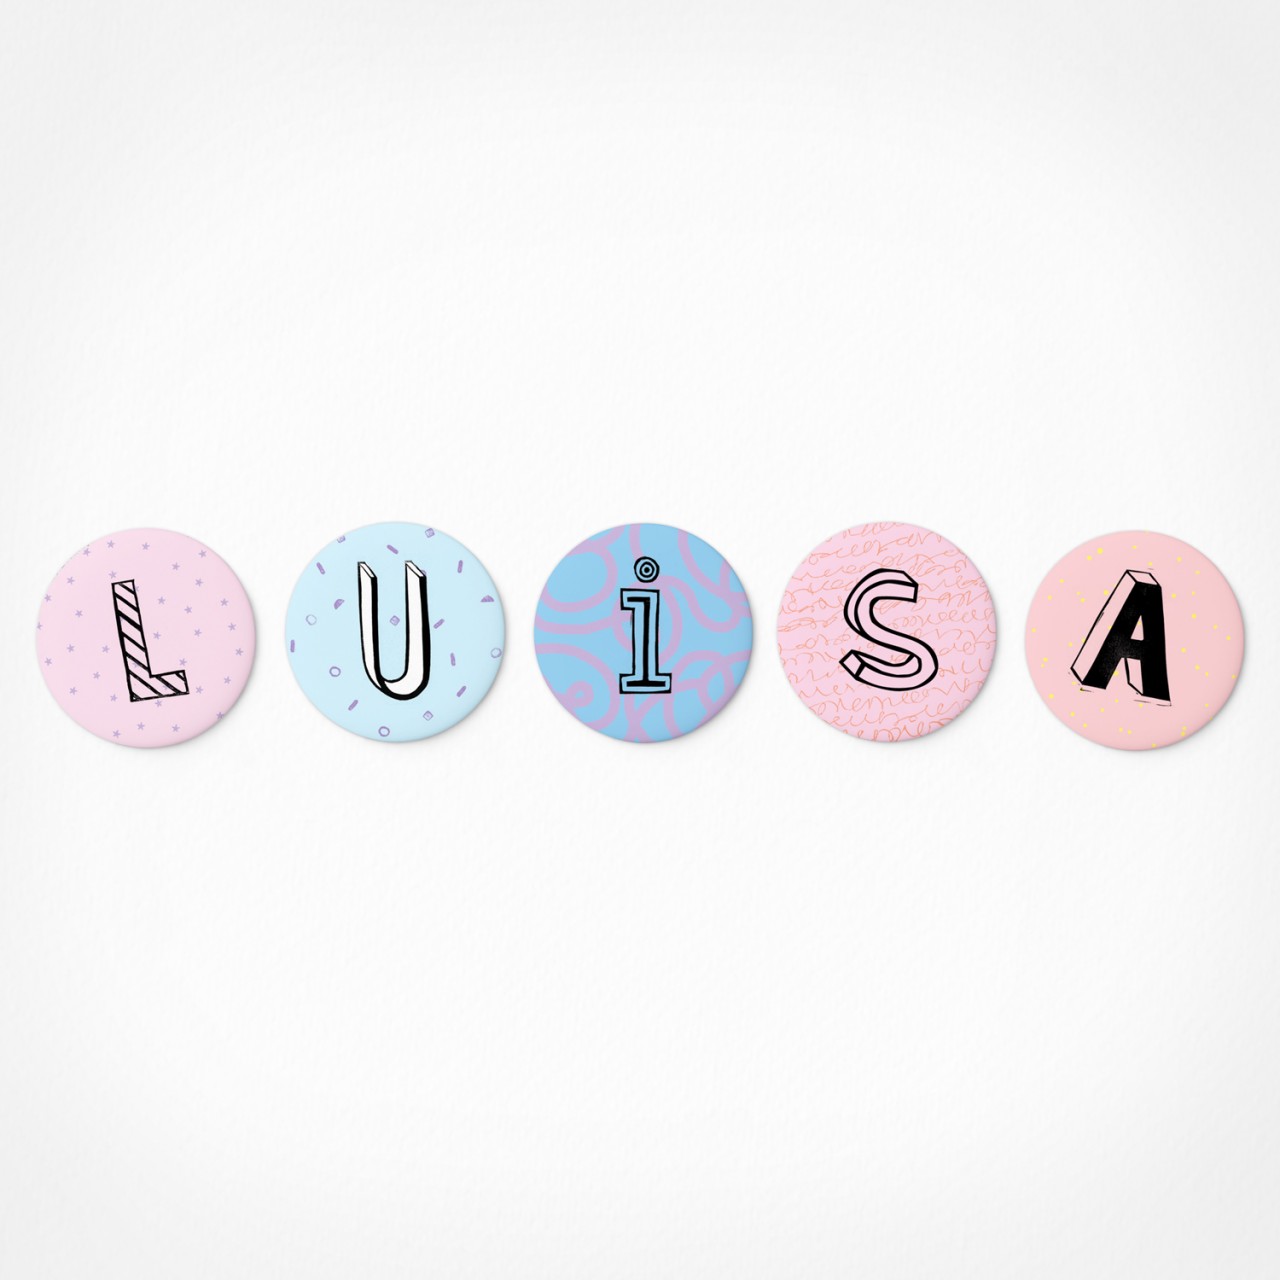 Luisa | Magnetbuchstaben Set | 5 Magnete